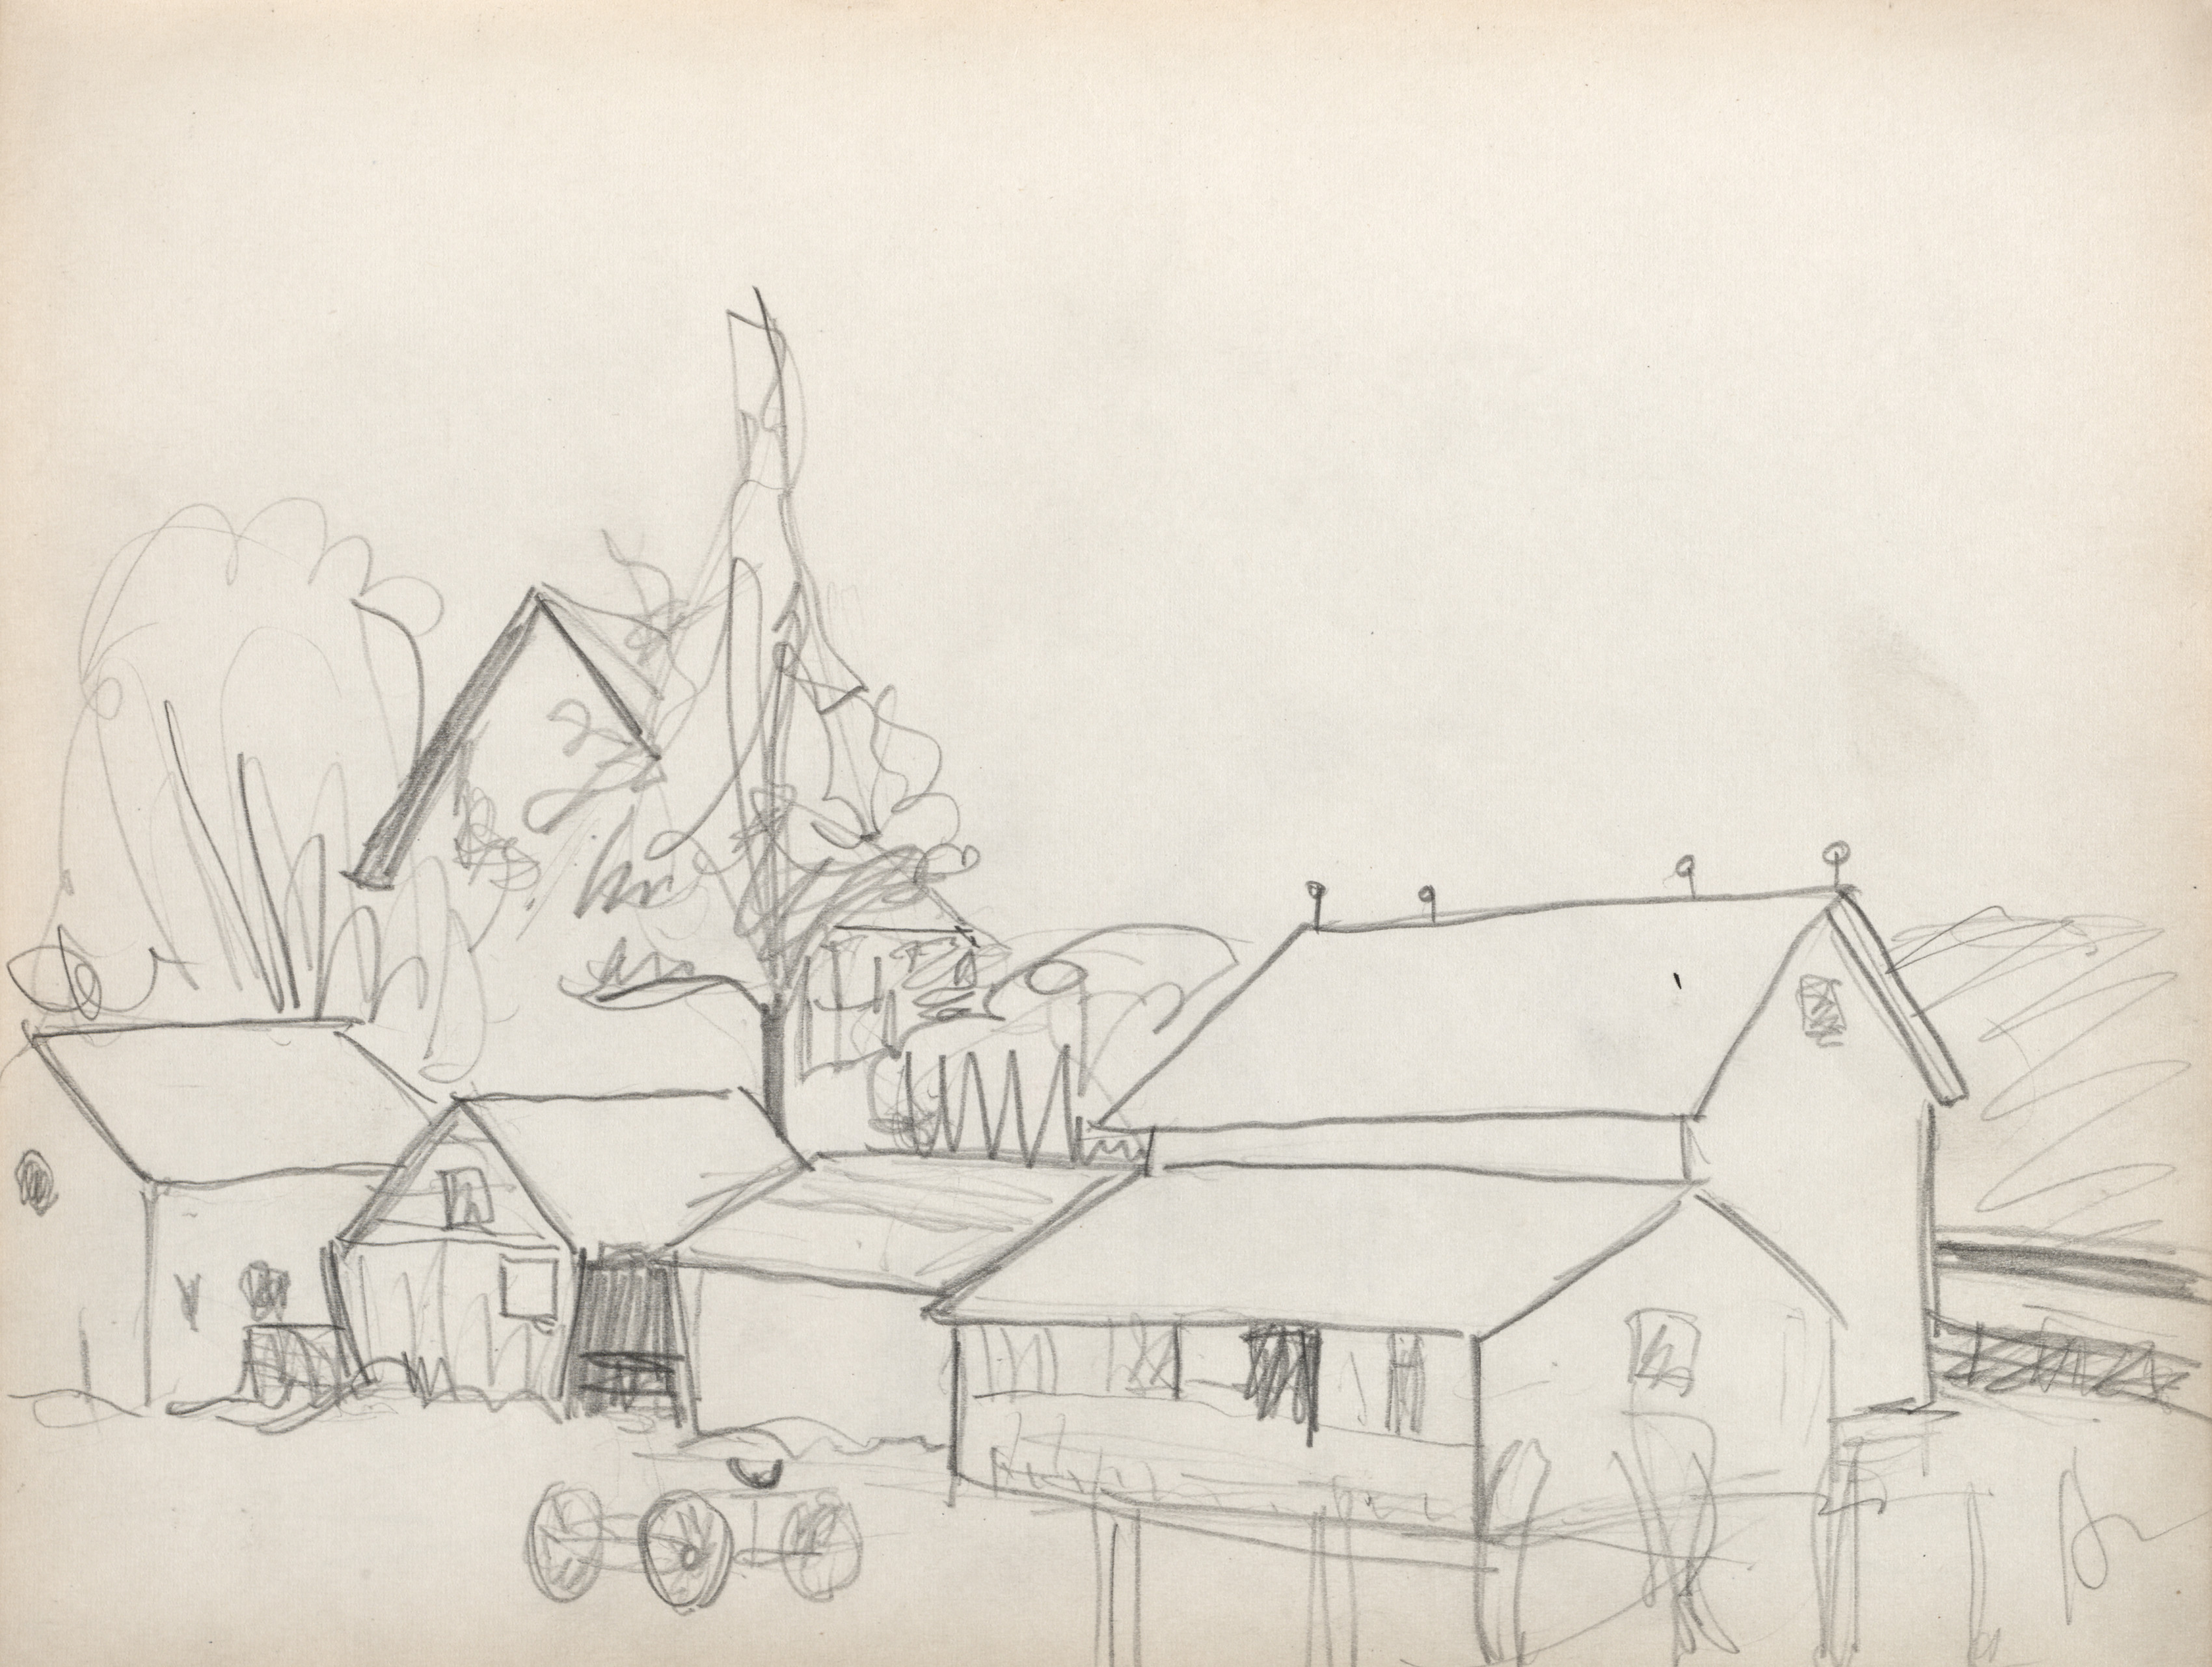 Sketchbook No. 2, page 95: Farm Buildings